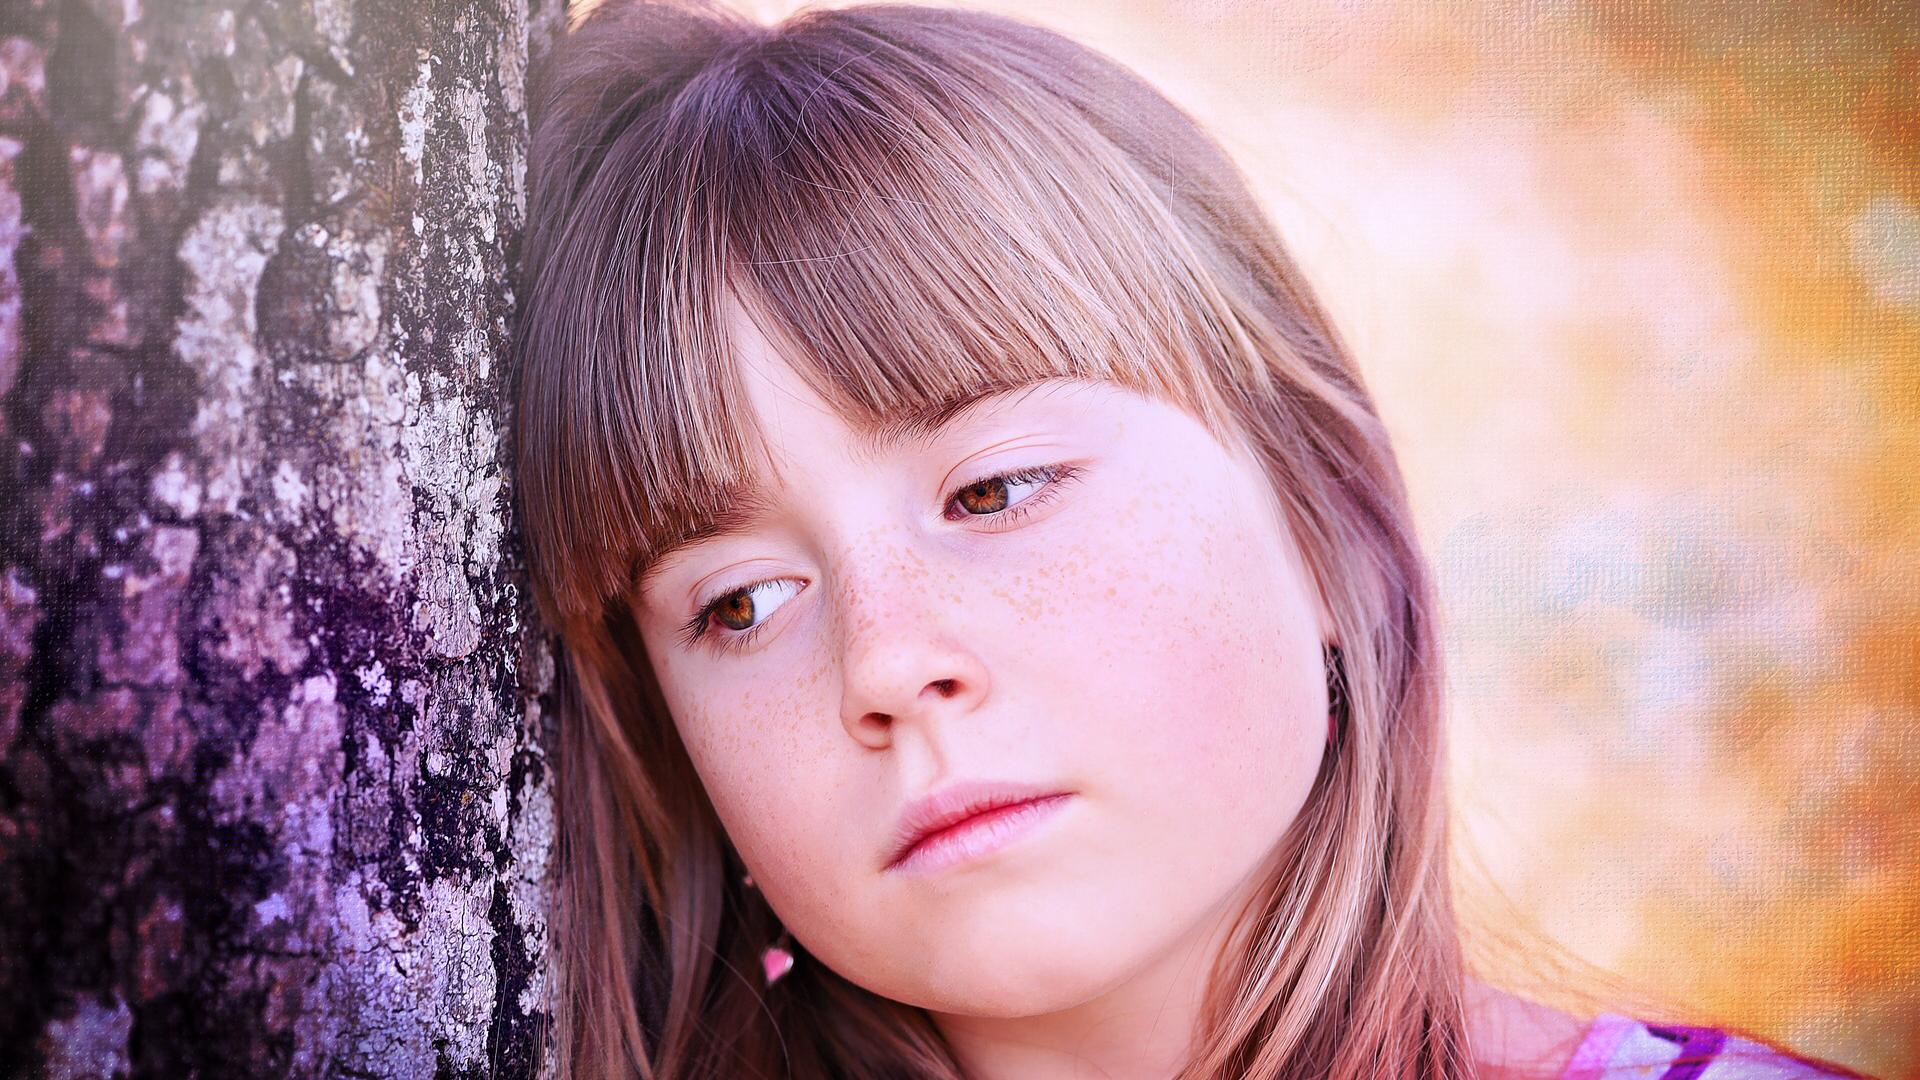 Kinder und Jugendliche verarbeiten Trauer  anders als Erwachsene und brauchen daher  auch eine andere Form der Begleitung. (c) www.pixabay.com